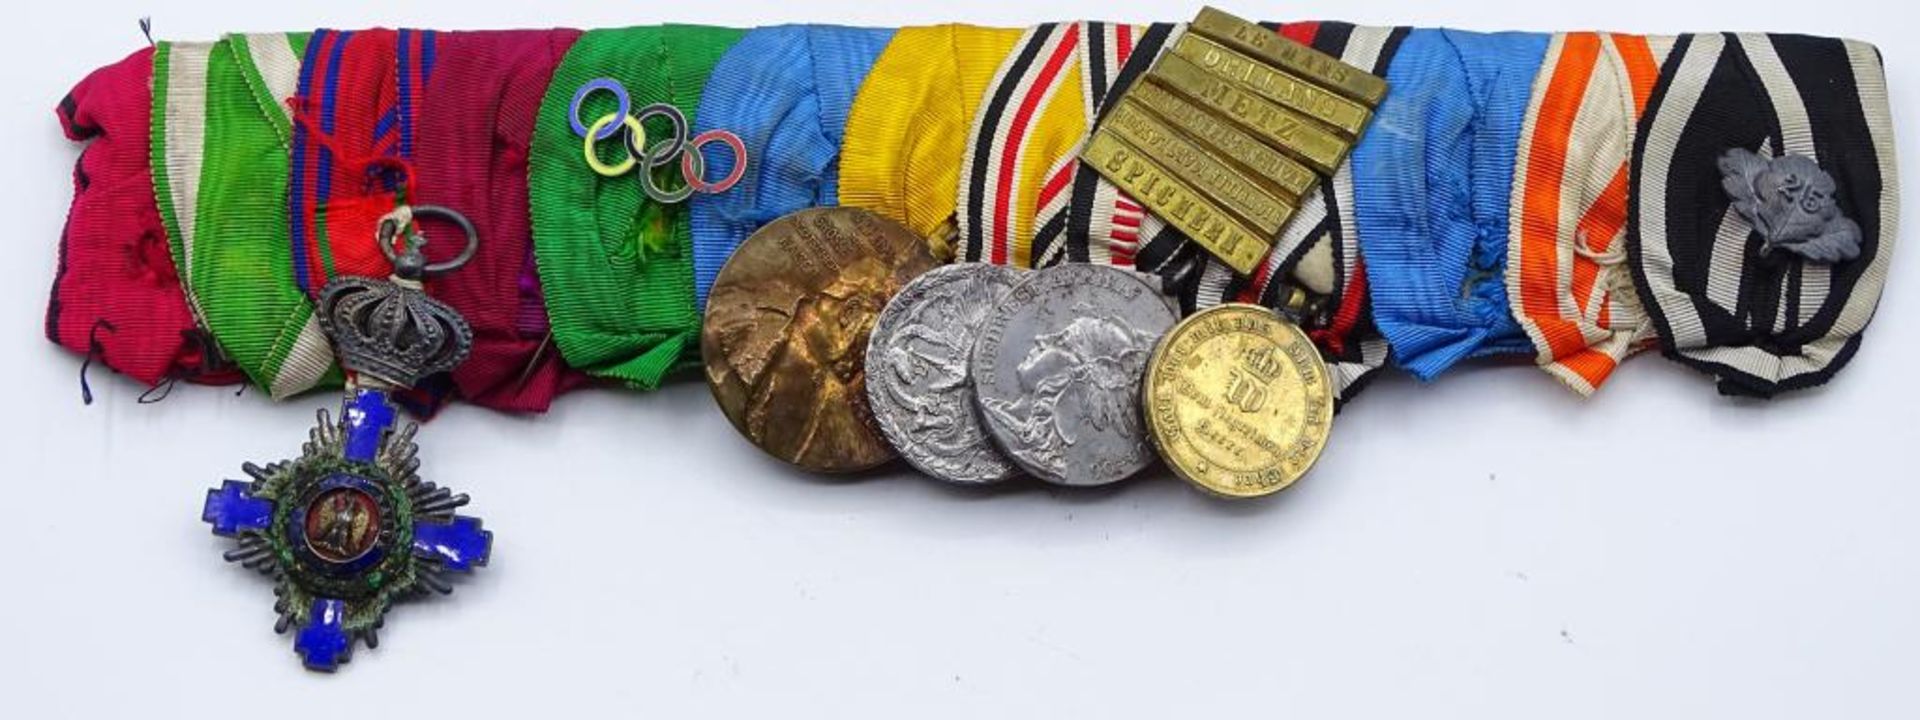 Lange Ordensspange mit 5 Orden/Abzeichen/Medaillen,Königreich Rumänien Orden vom Stern Rumäniens-